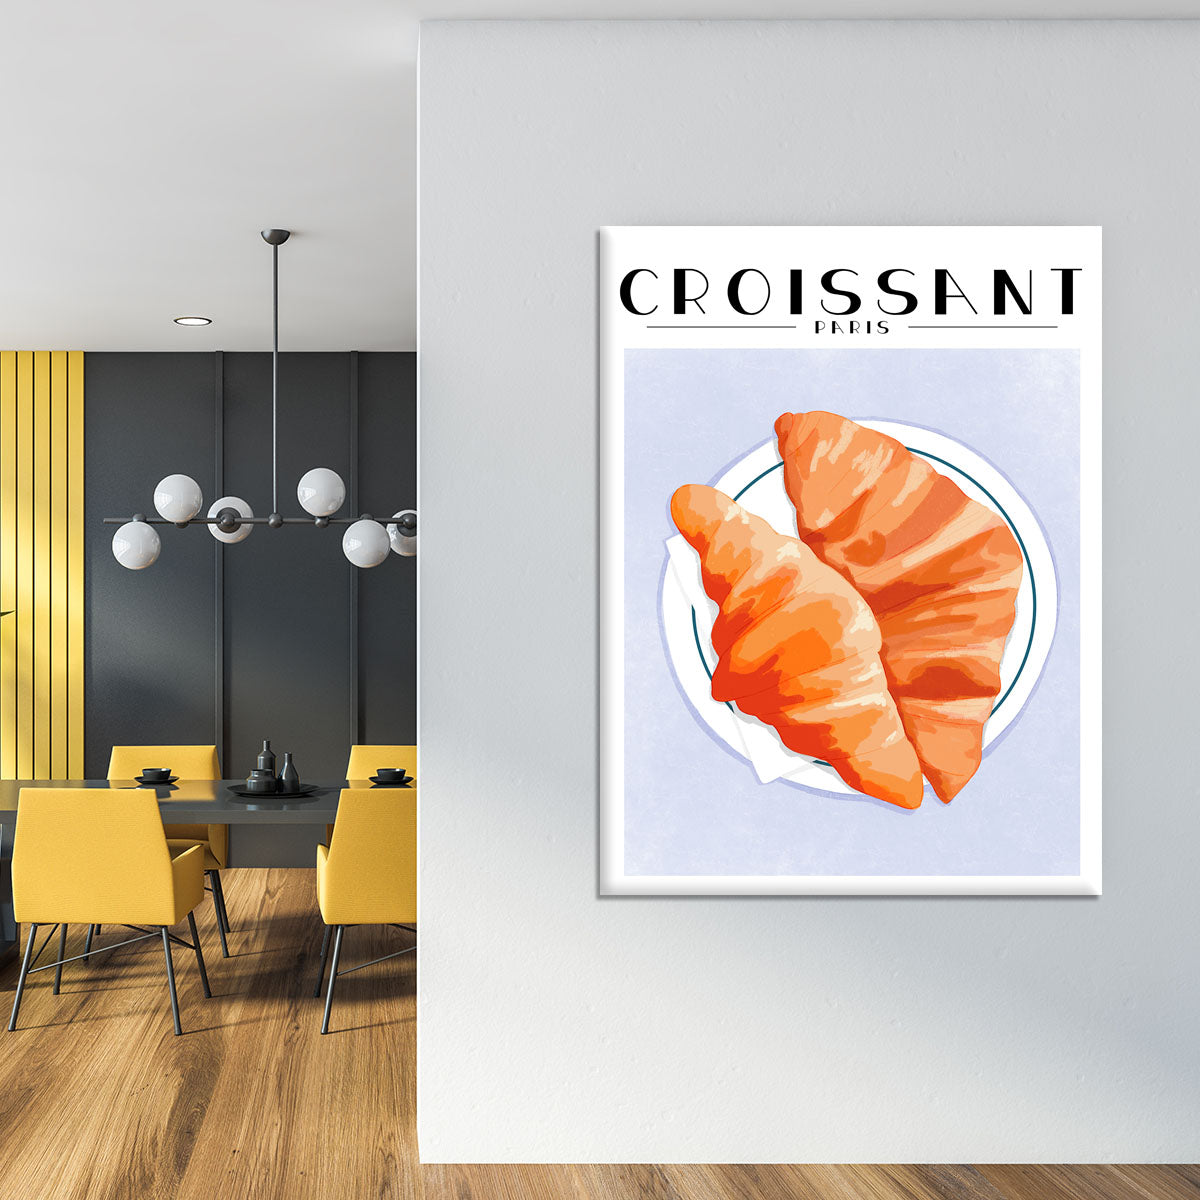 Croissant Paris Canvas Print or Poster - Canvas Art Rocks - 4